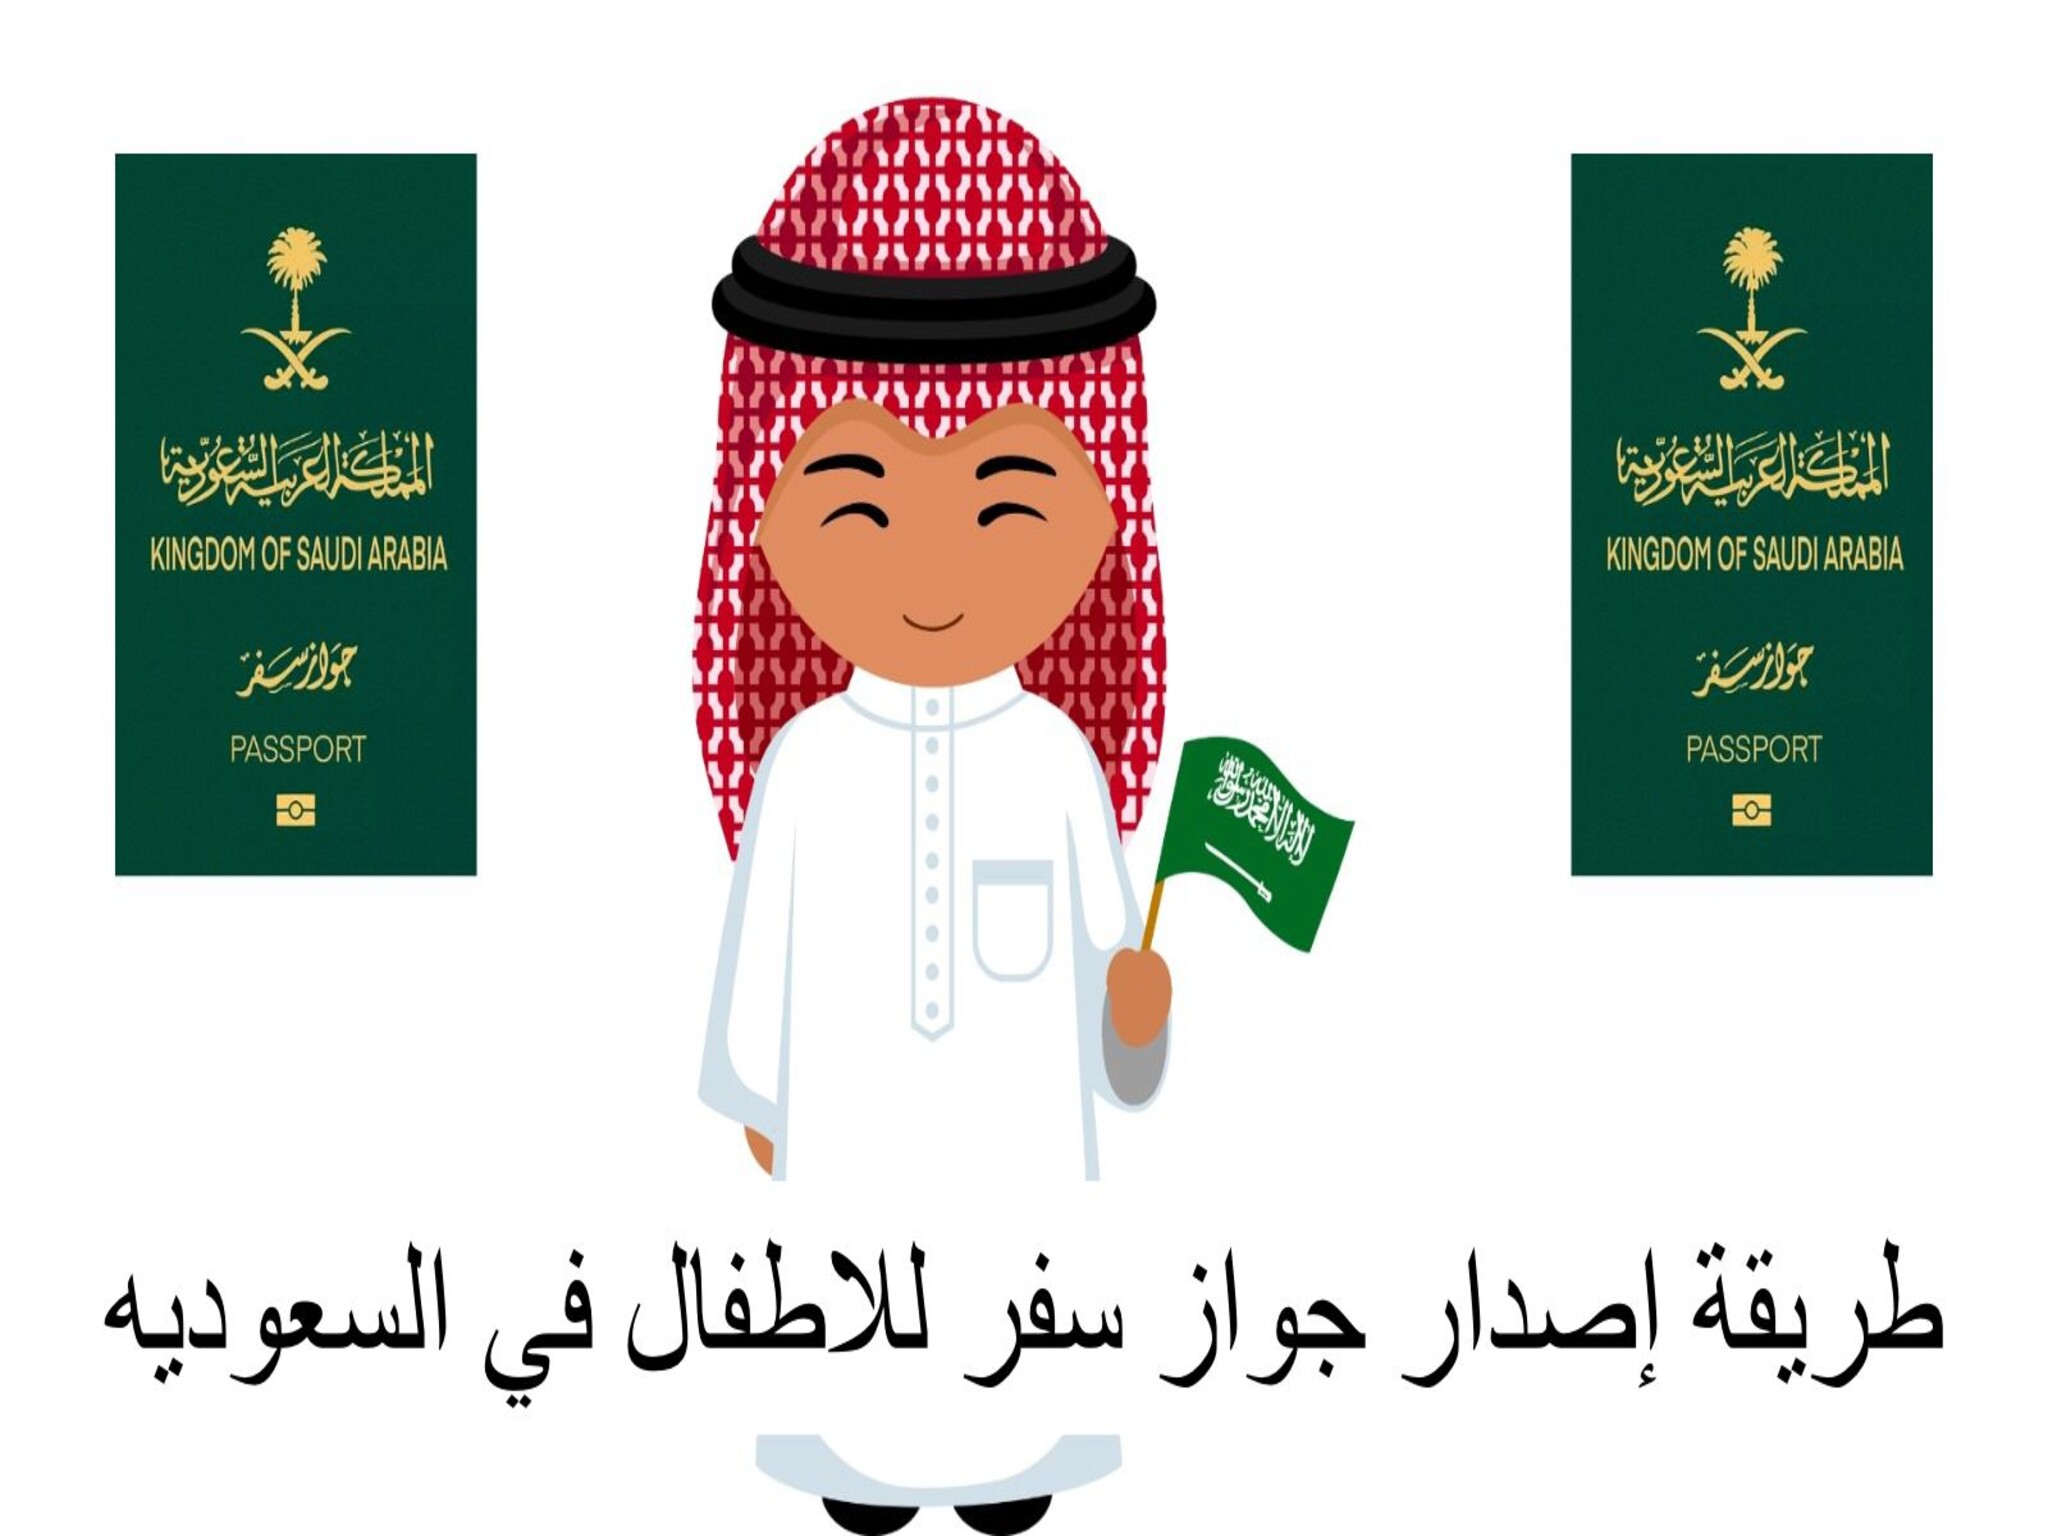 خطوات إصدار جواز سفر للأطفال بالمملكة السعودية وأهم الشروط المطلوبة 1445هـ